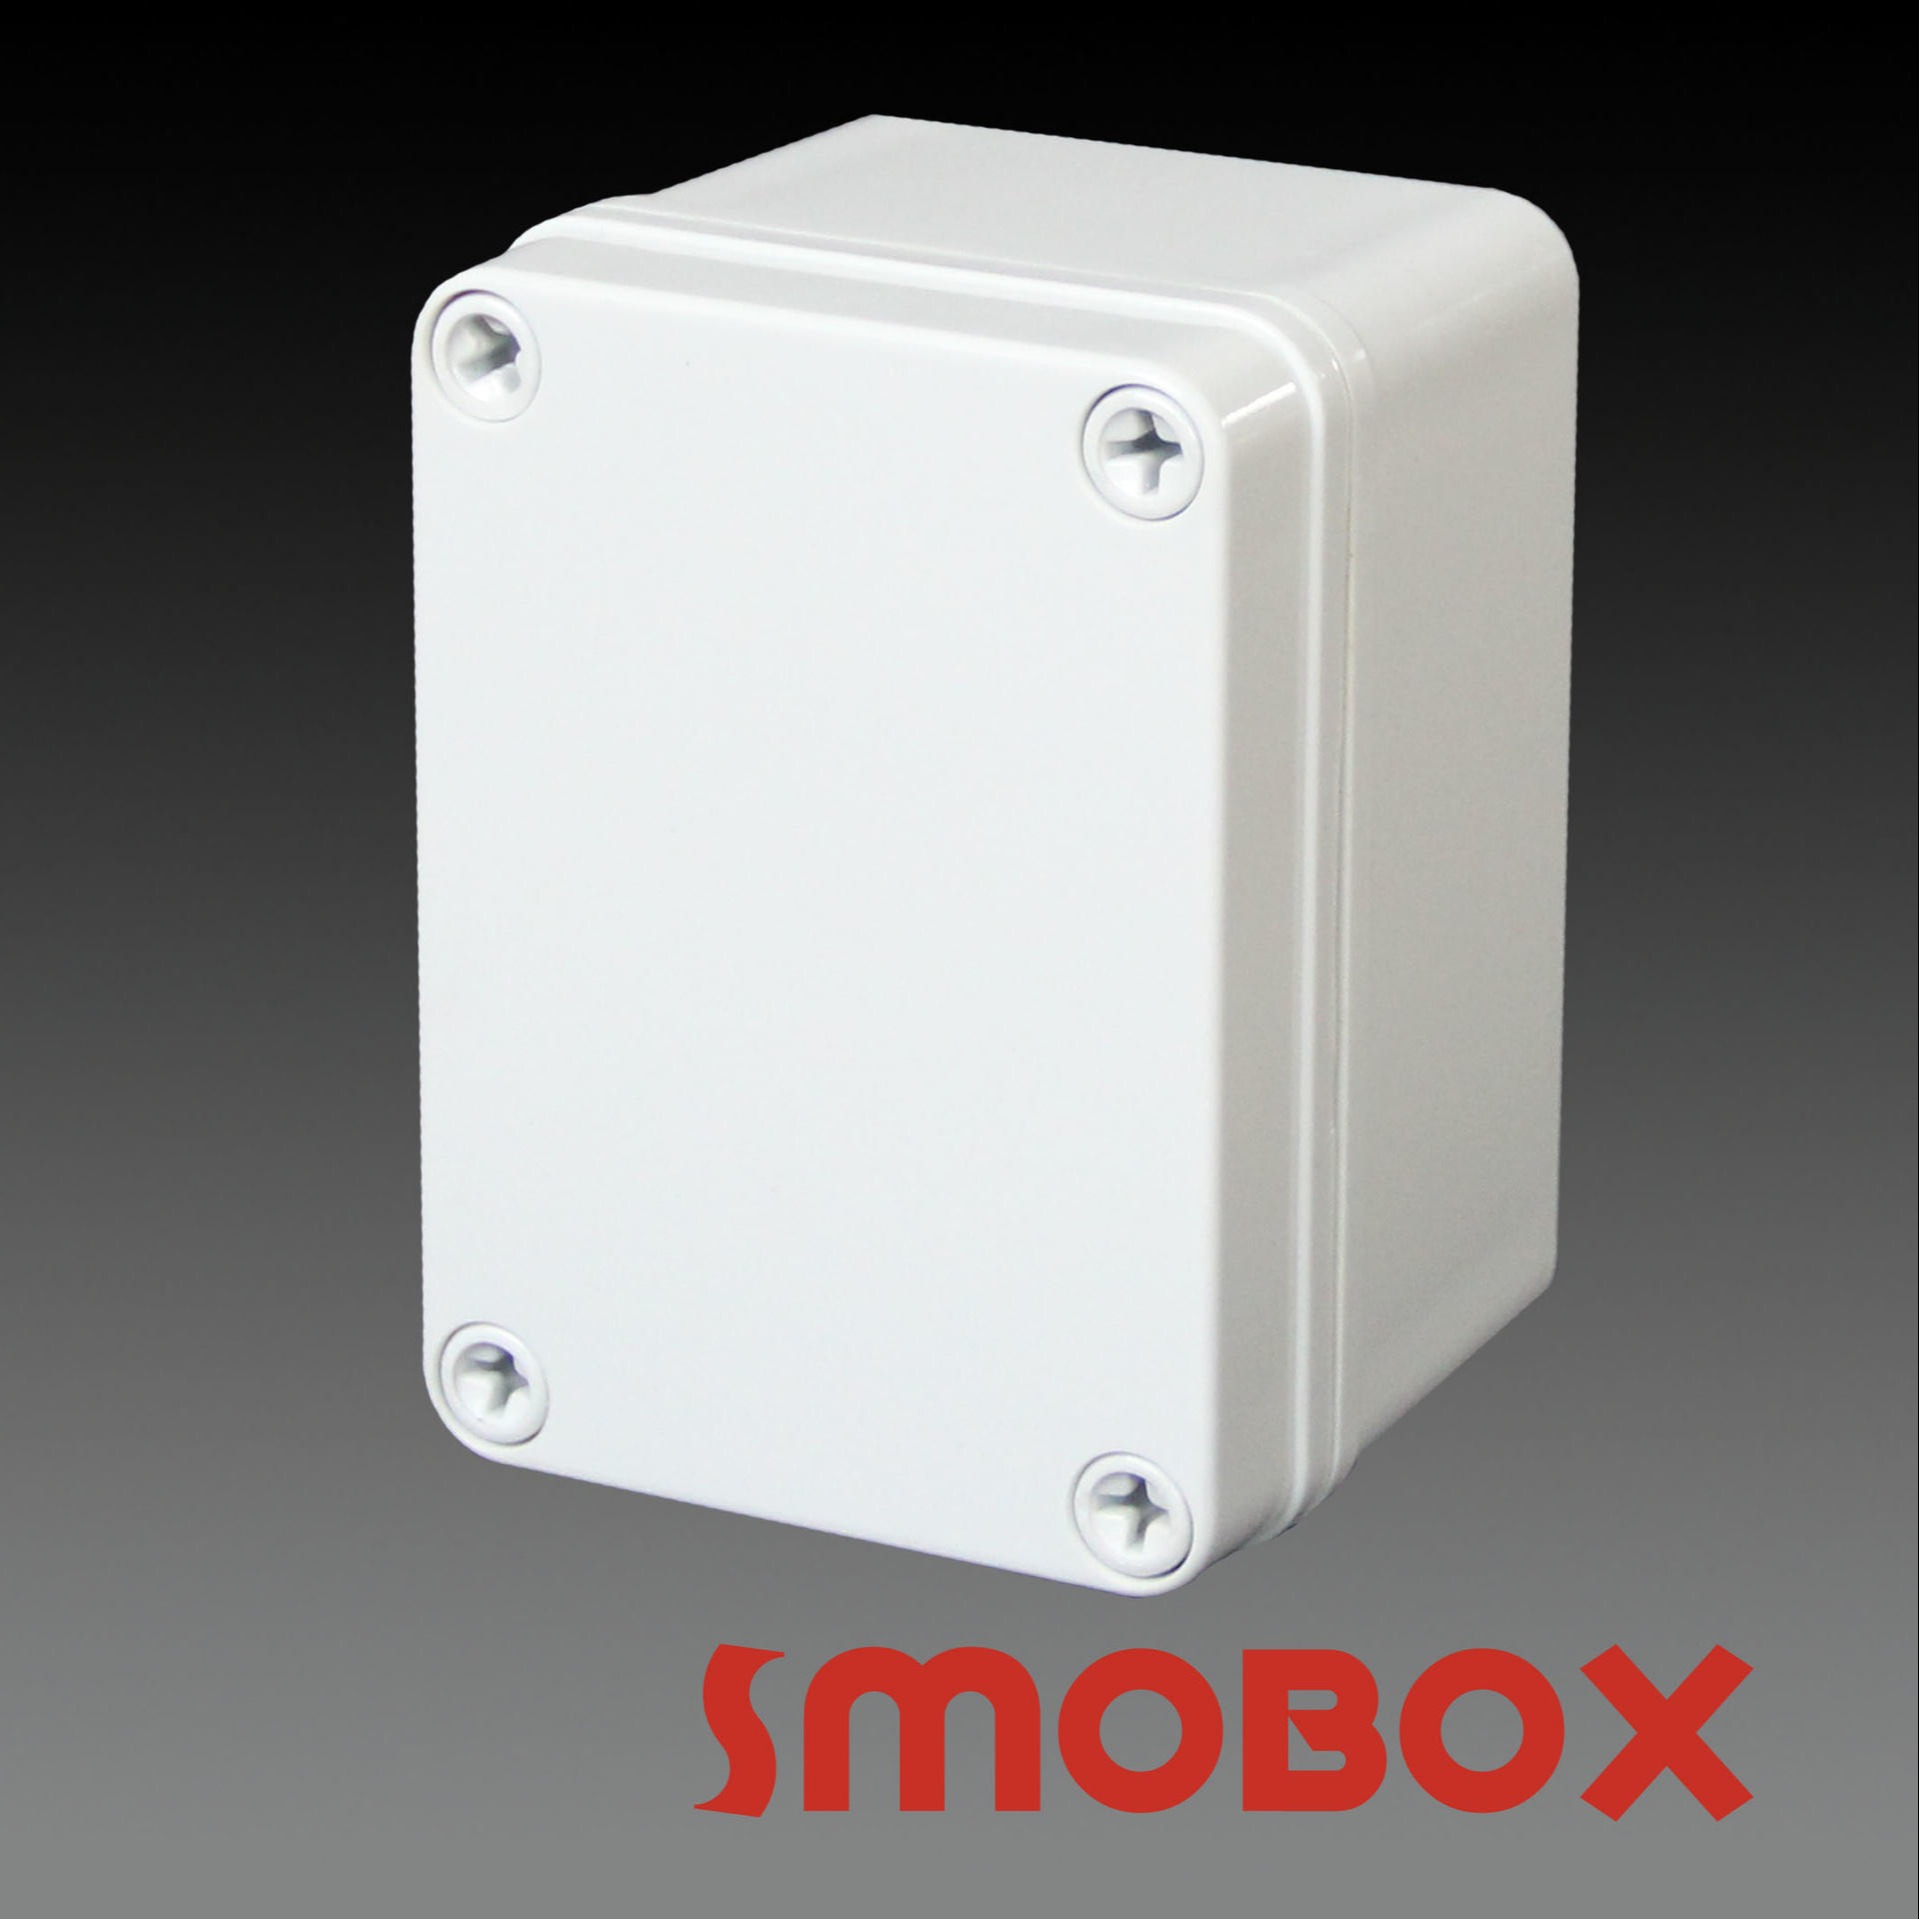 SMOBOX塑料接线箱LD-081107  塑料按钮盒  塑料接线盒  分线按钮  控制外壳 定制加工